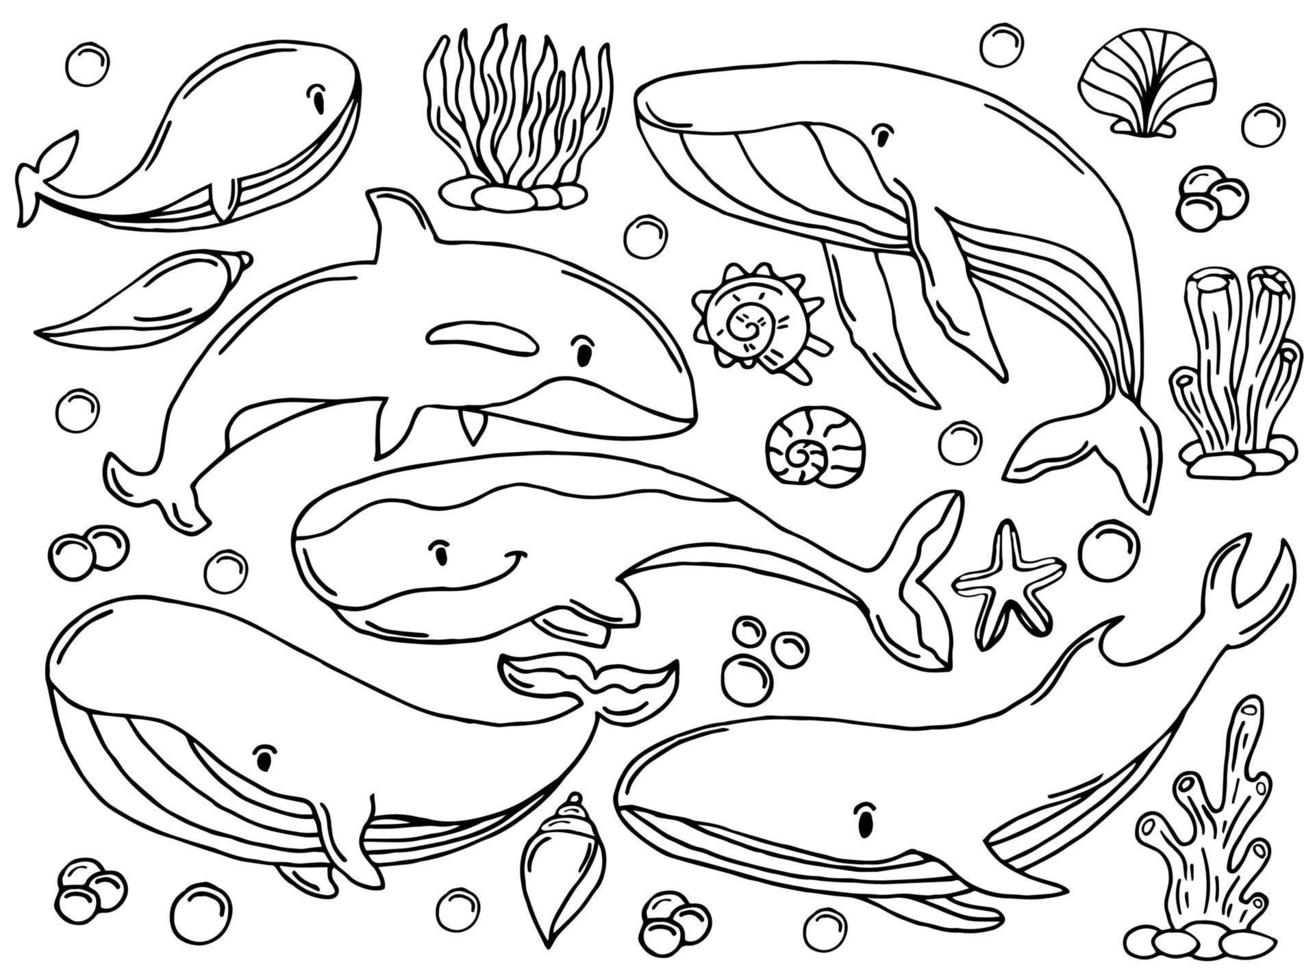 conjunto de bocetos de color de ballenas. gran colección de diferentes ballenas y delfines dibujados a mano en estilo grabado. ilustración zoológica de mamíferos marinos vector